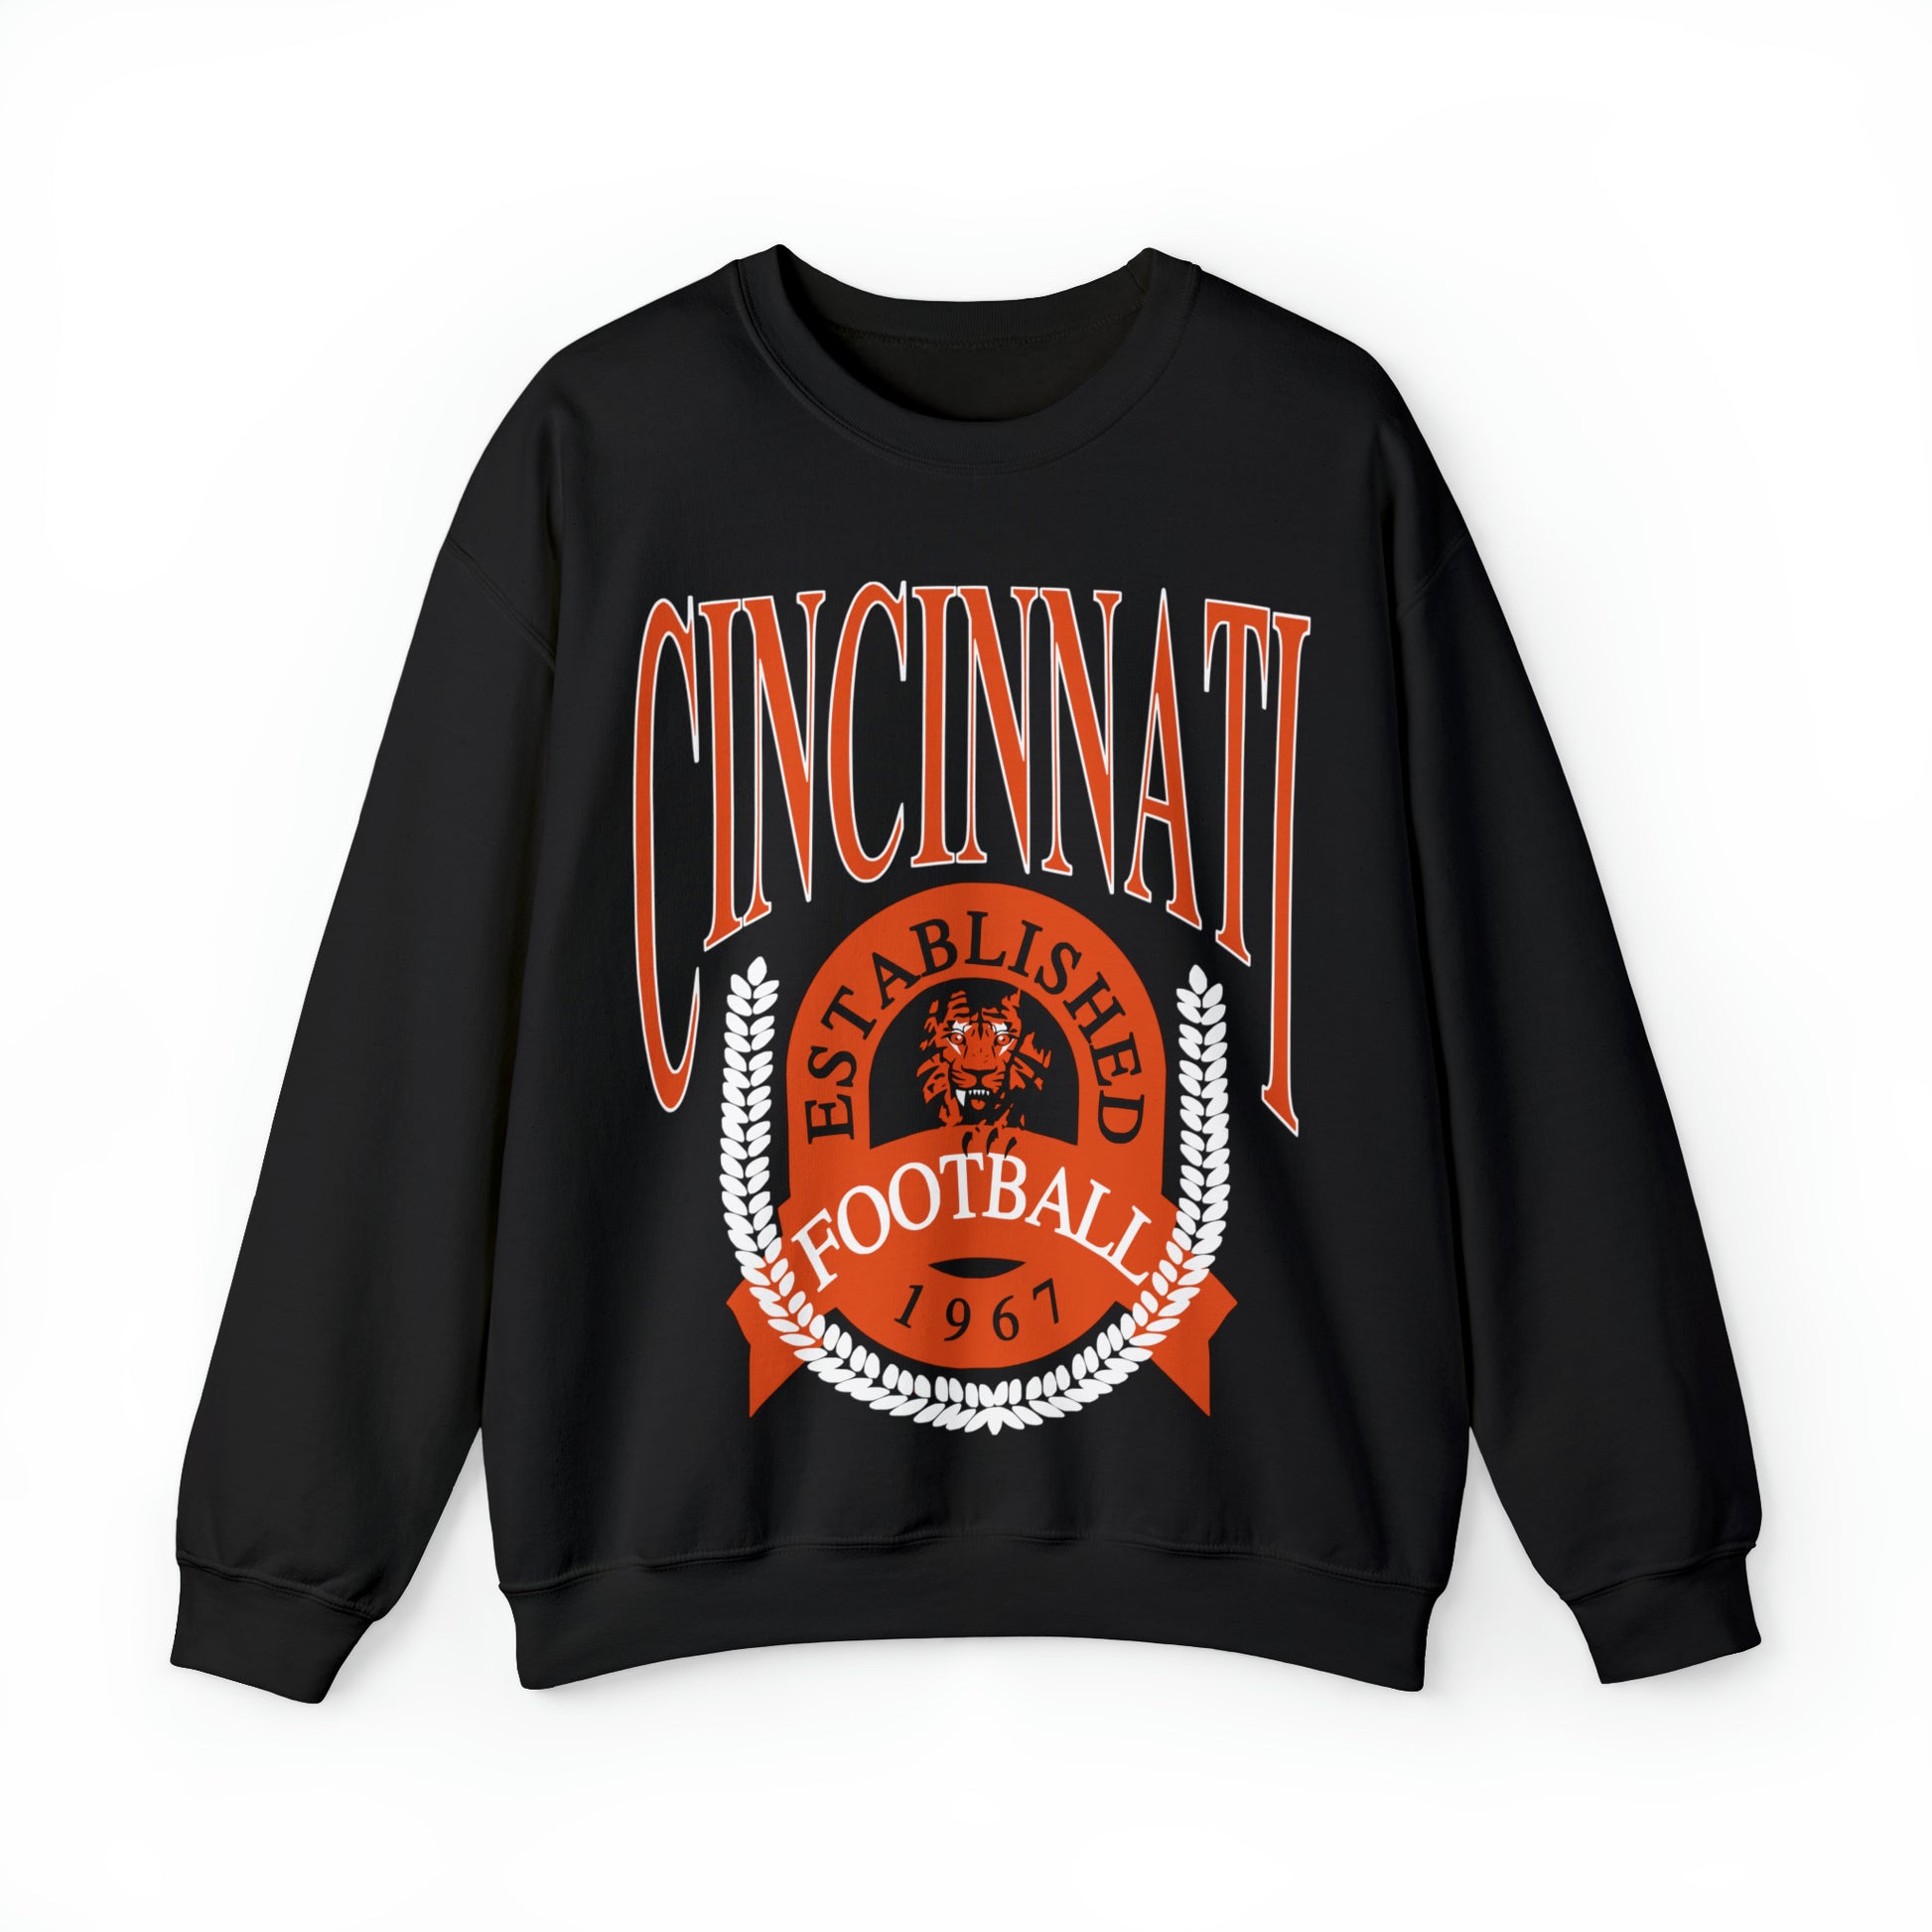 Vintage Cincinnati Bengals Crewneck Sweatshirt - Retro Men's & Women's Oversized NFL Football Unisex Hoodie - Design 1 Black